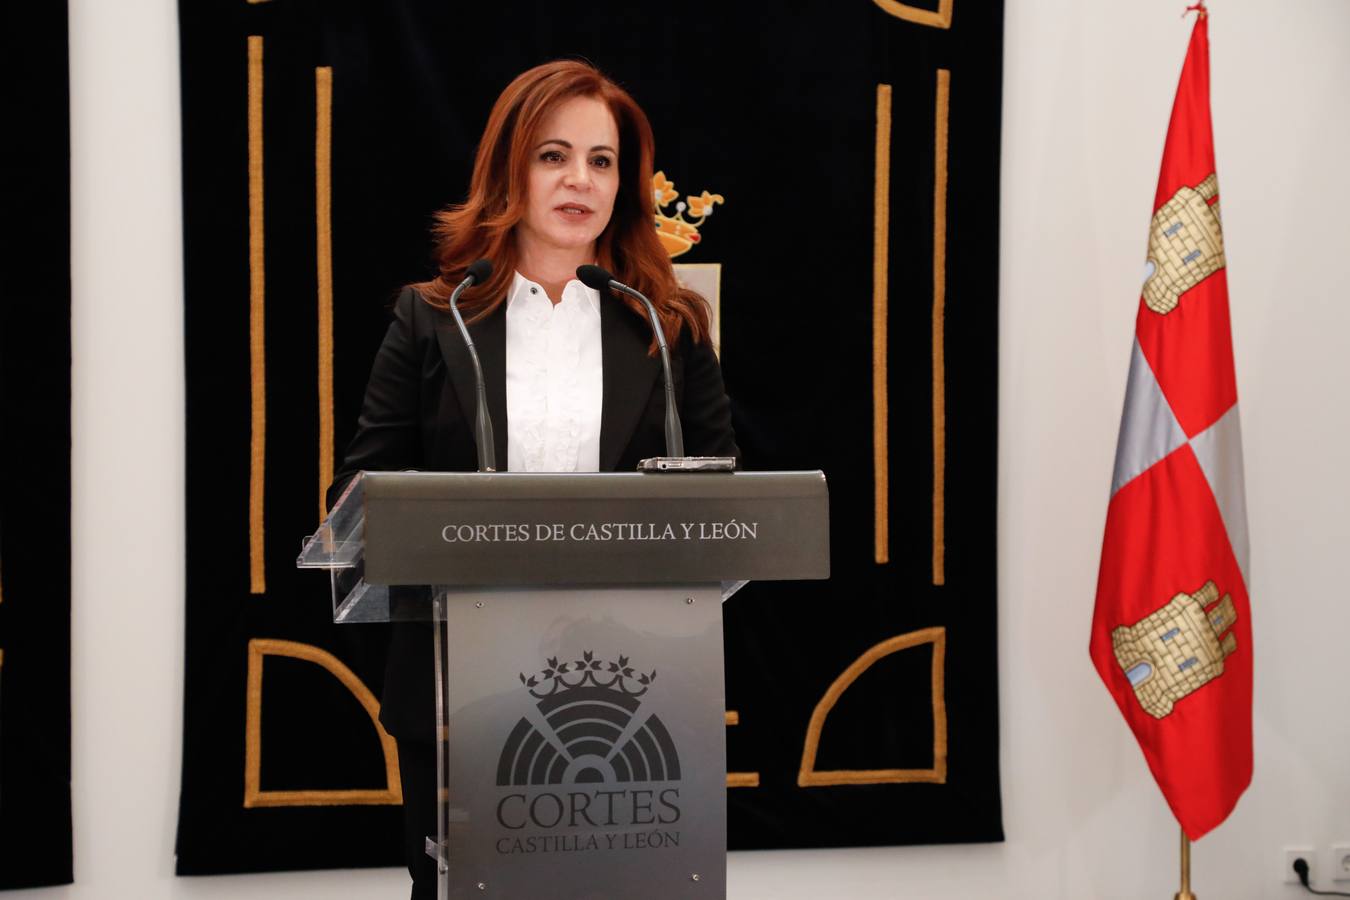 La presidenta de las Cortes que profirió duros reproches contra el presidente regional del PP Alfonso Fernández Mañueco, abandona su cargo como procuradora y se da de baja como militante del PP